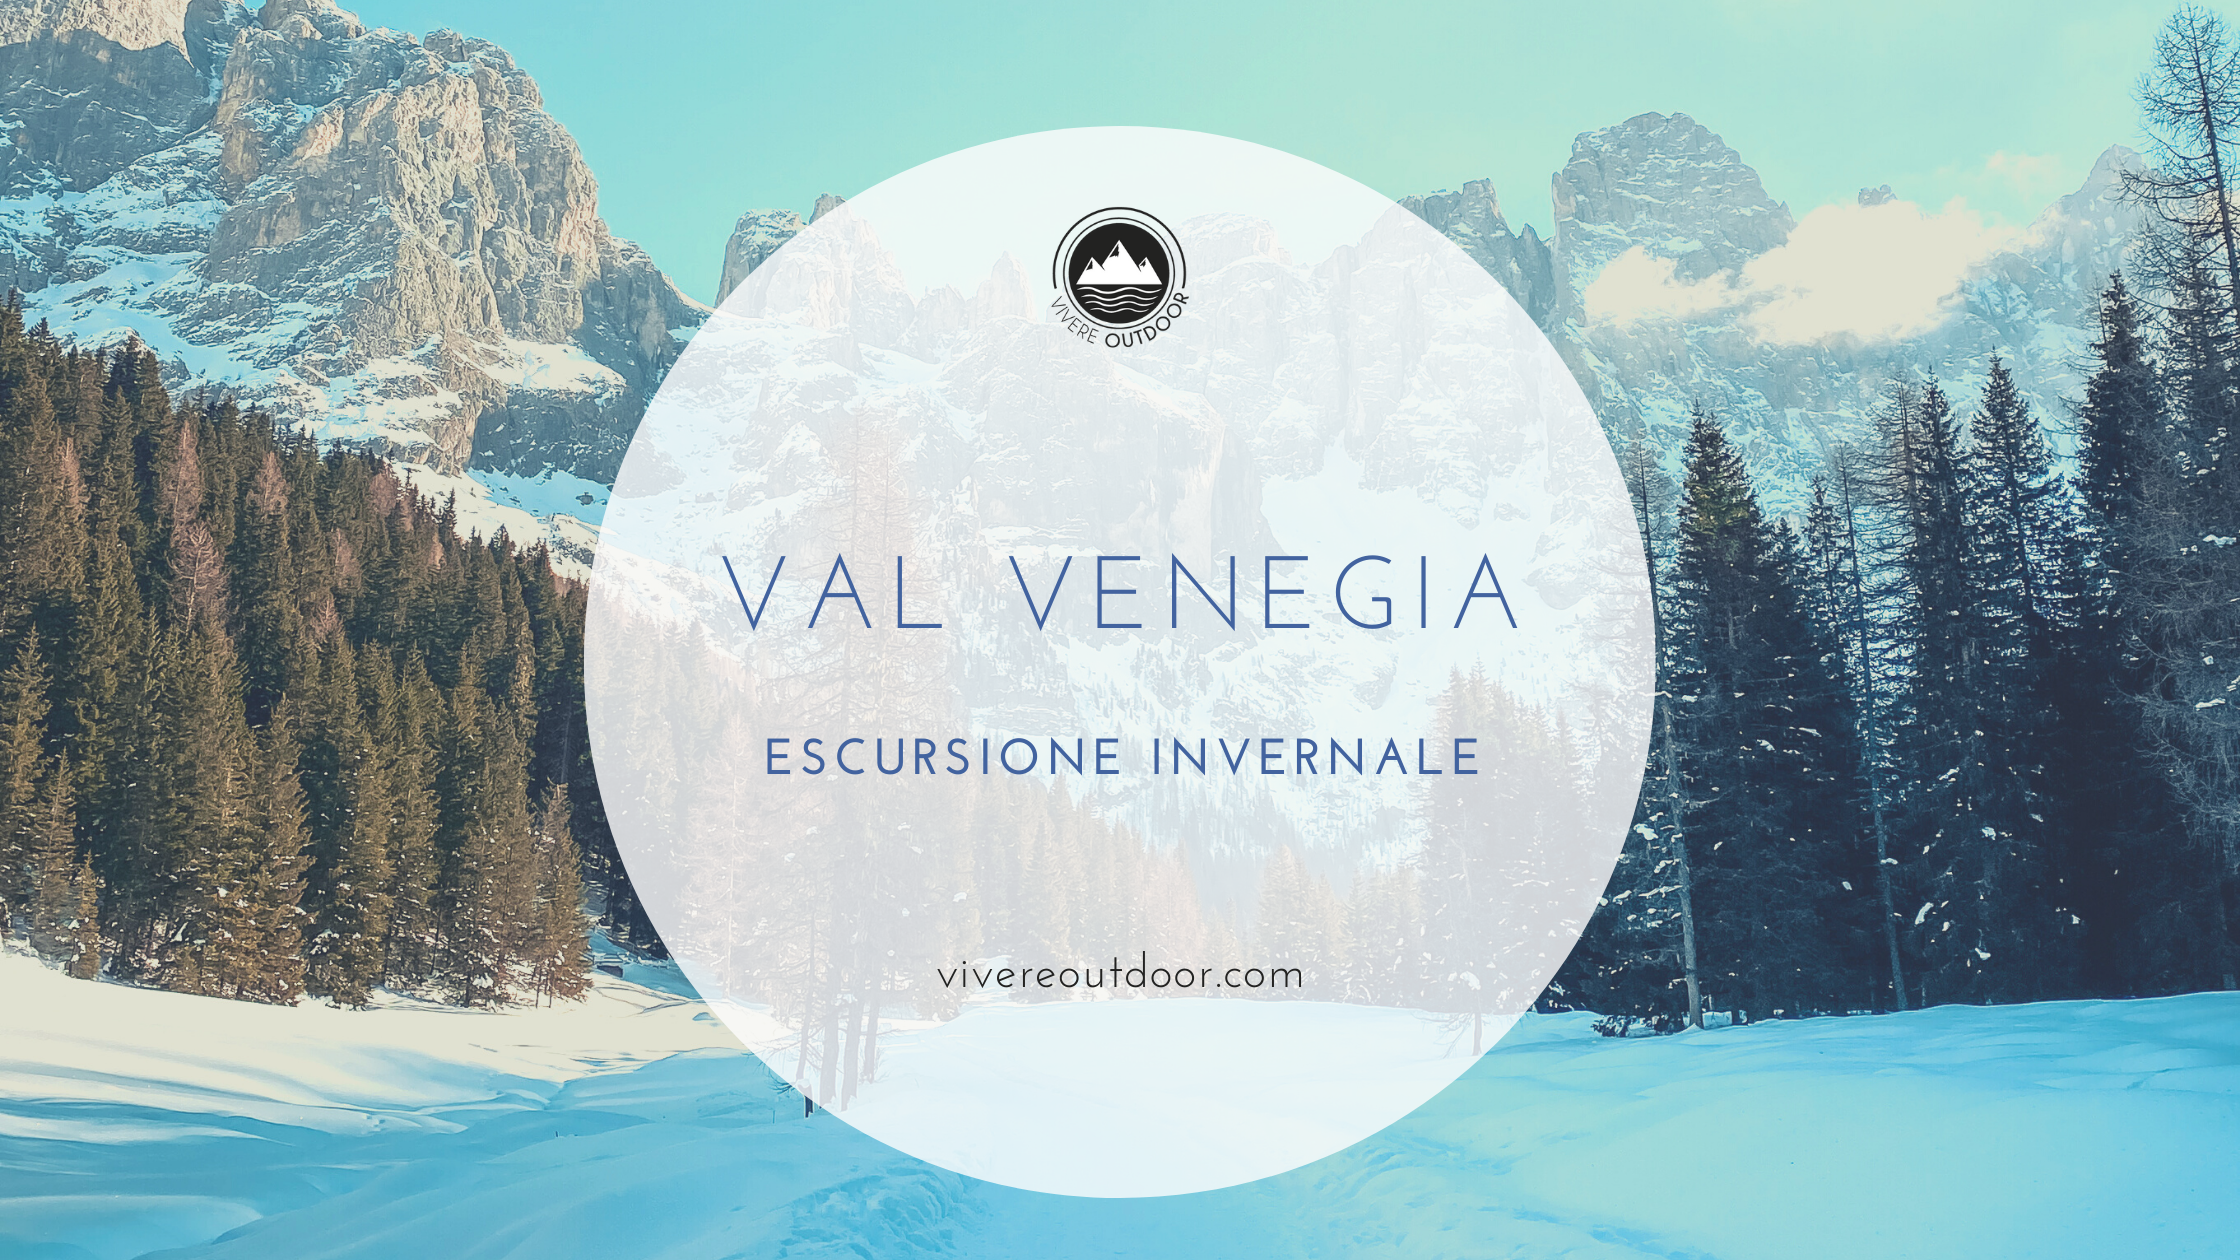 Escursione invernale in Val Venegia (Trentino)